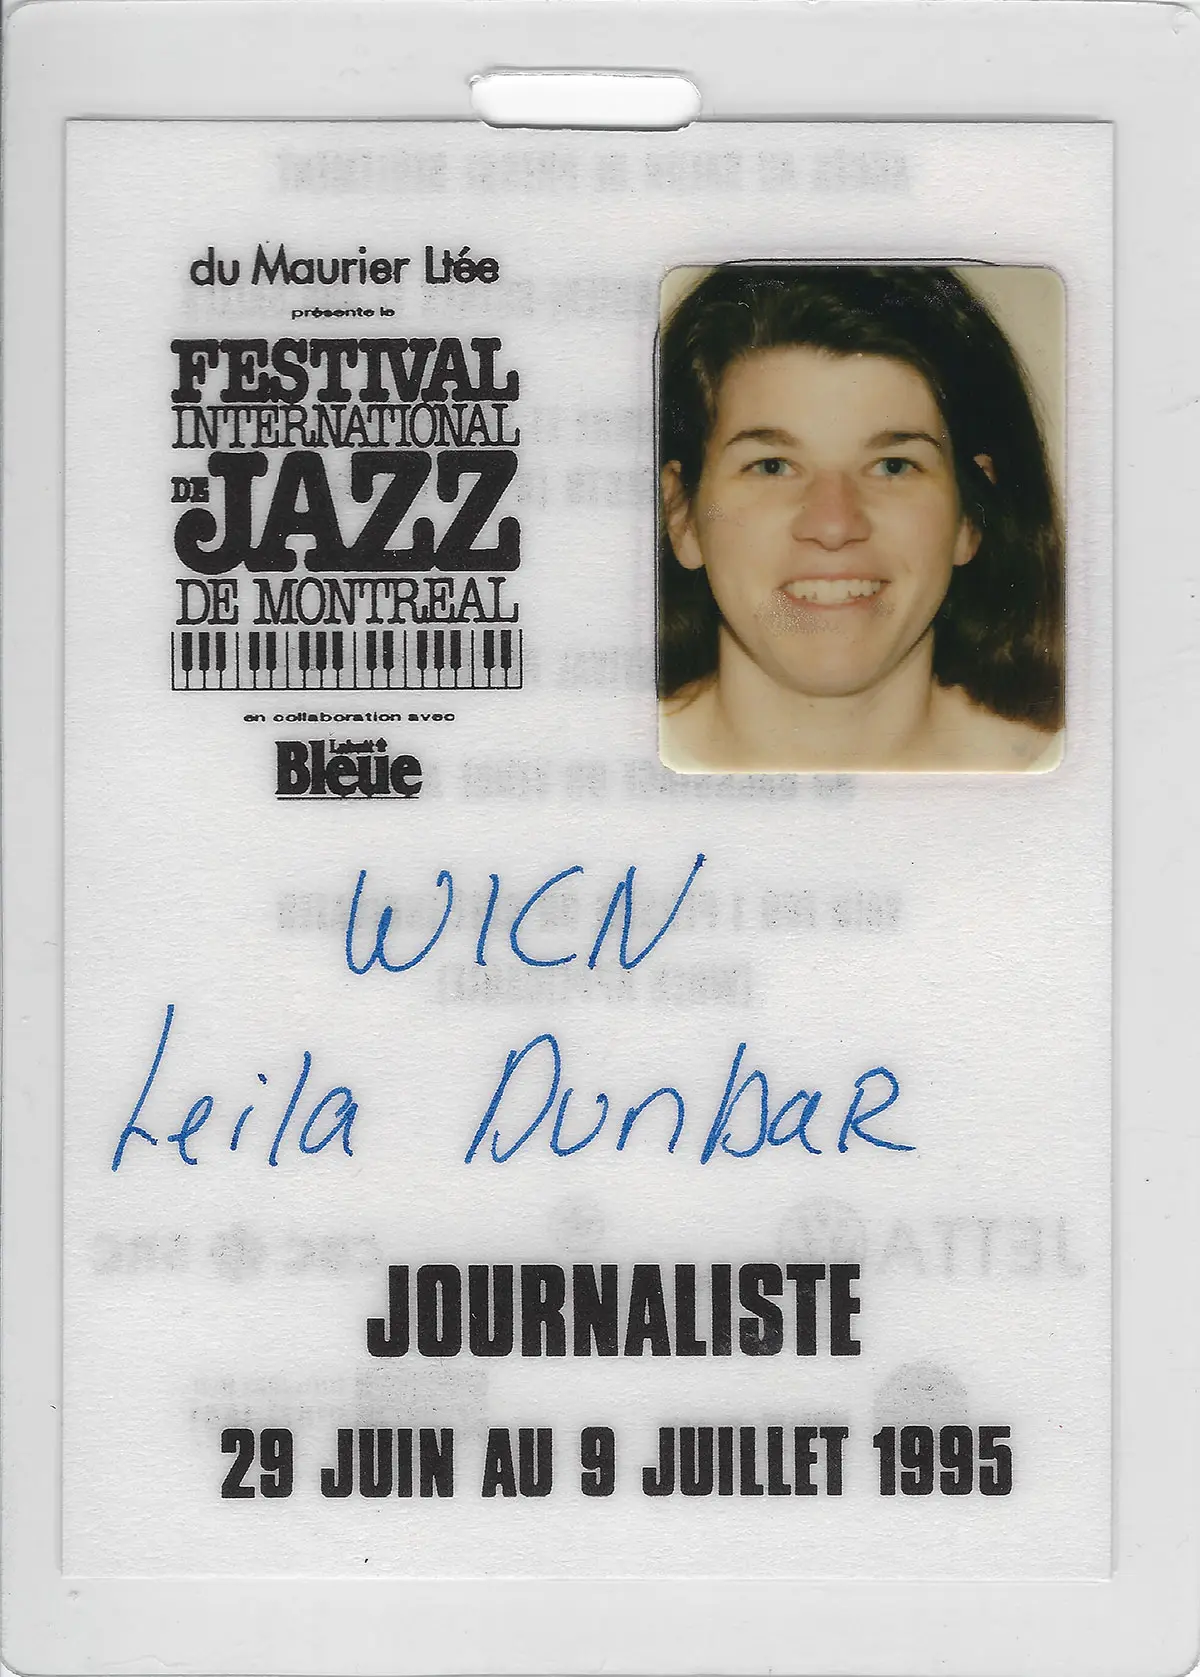 Montreal Jazz Fest Press Credentials, 1995